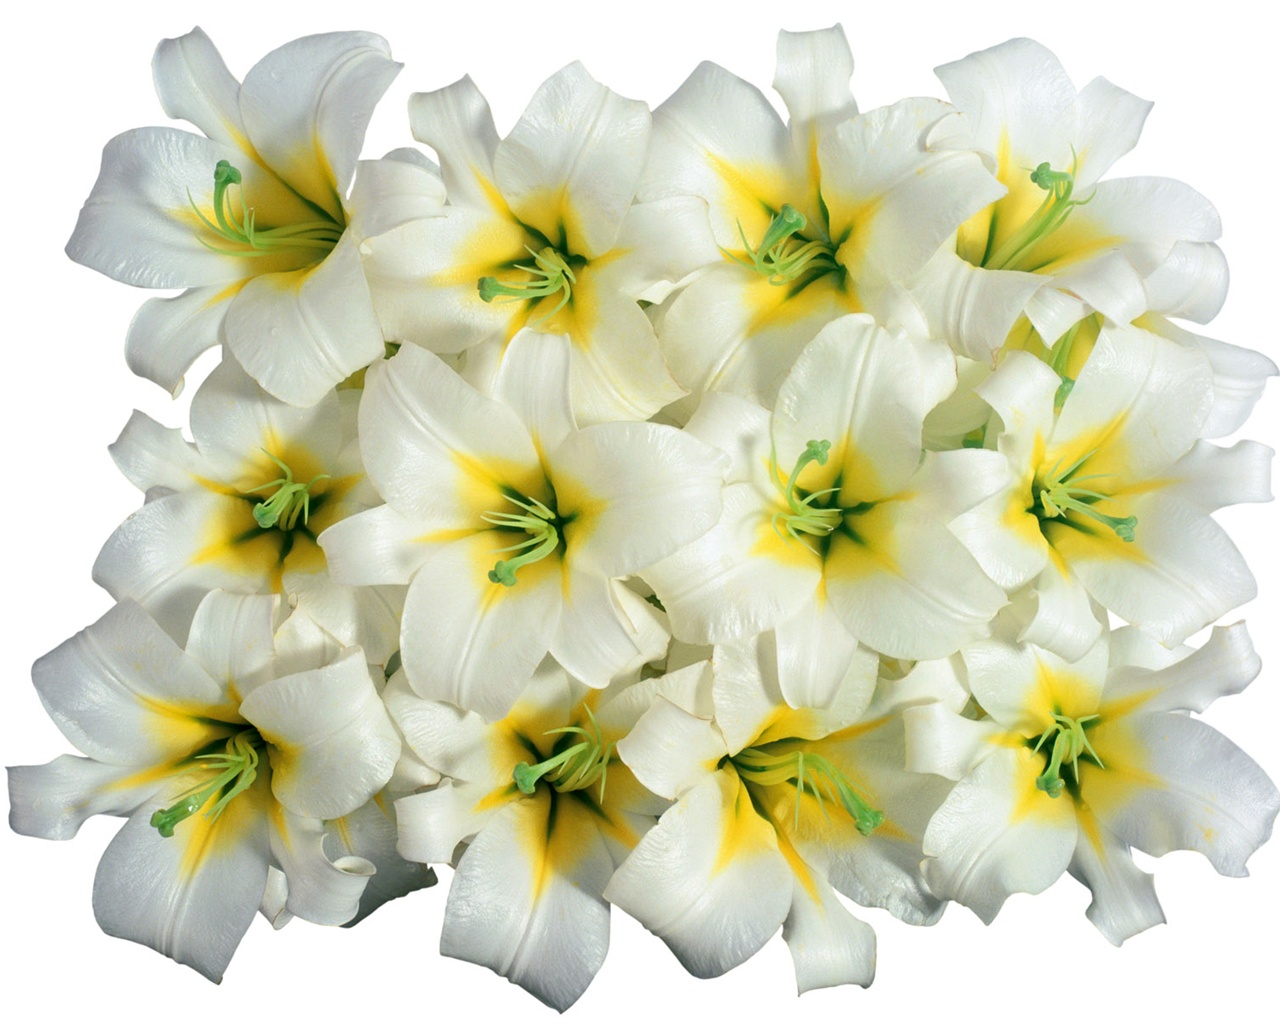 Blanche-Neige fond d'écran fleurs #3 - 1280x1024